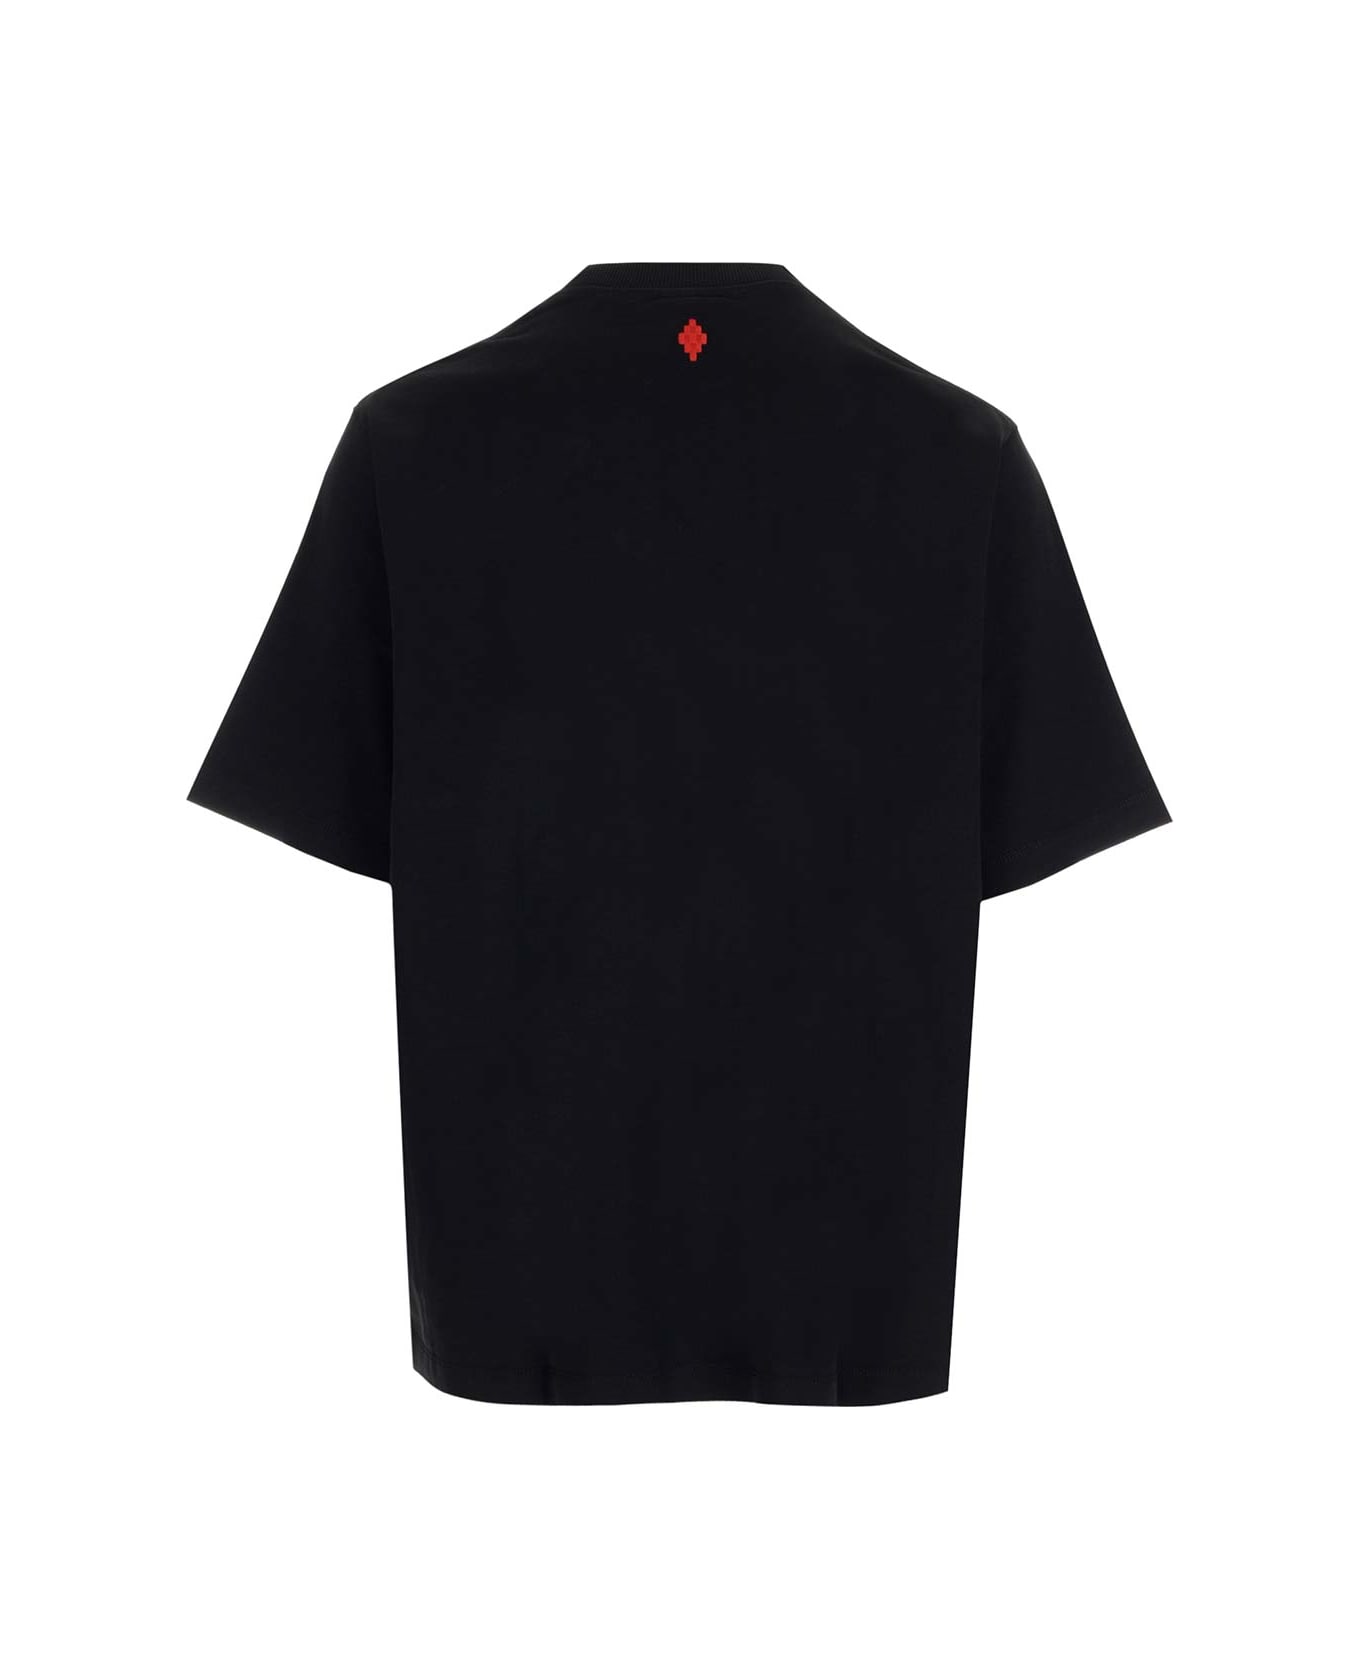 Marcelo Burlon Feathers Necklace Over T-shirt - Black